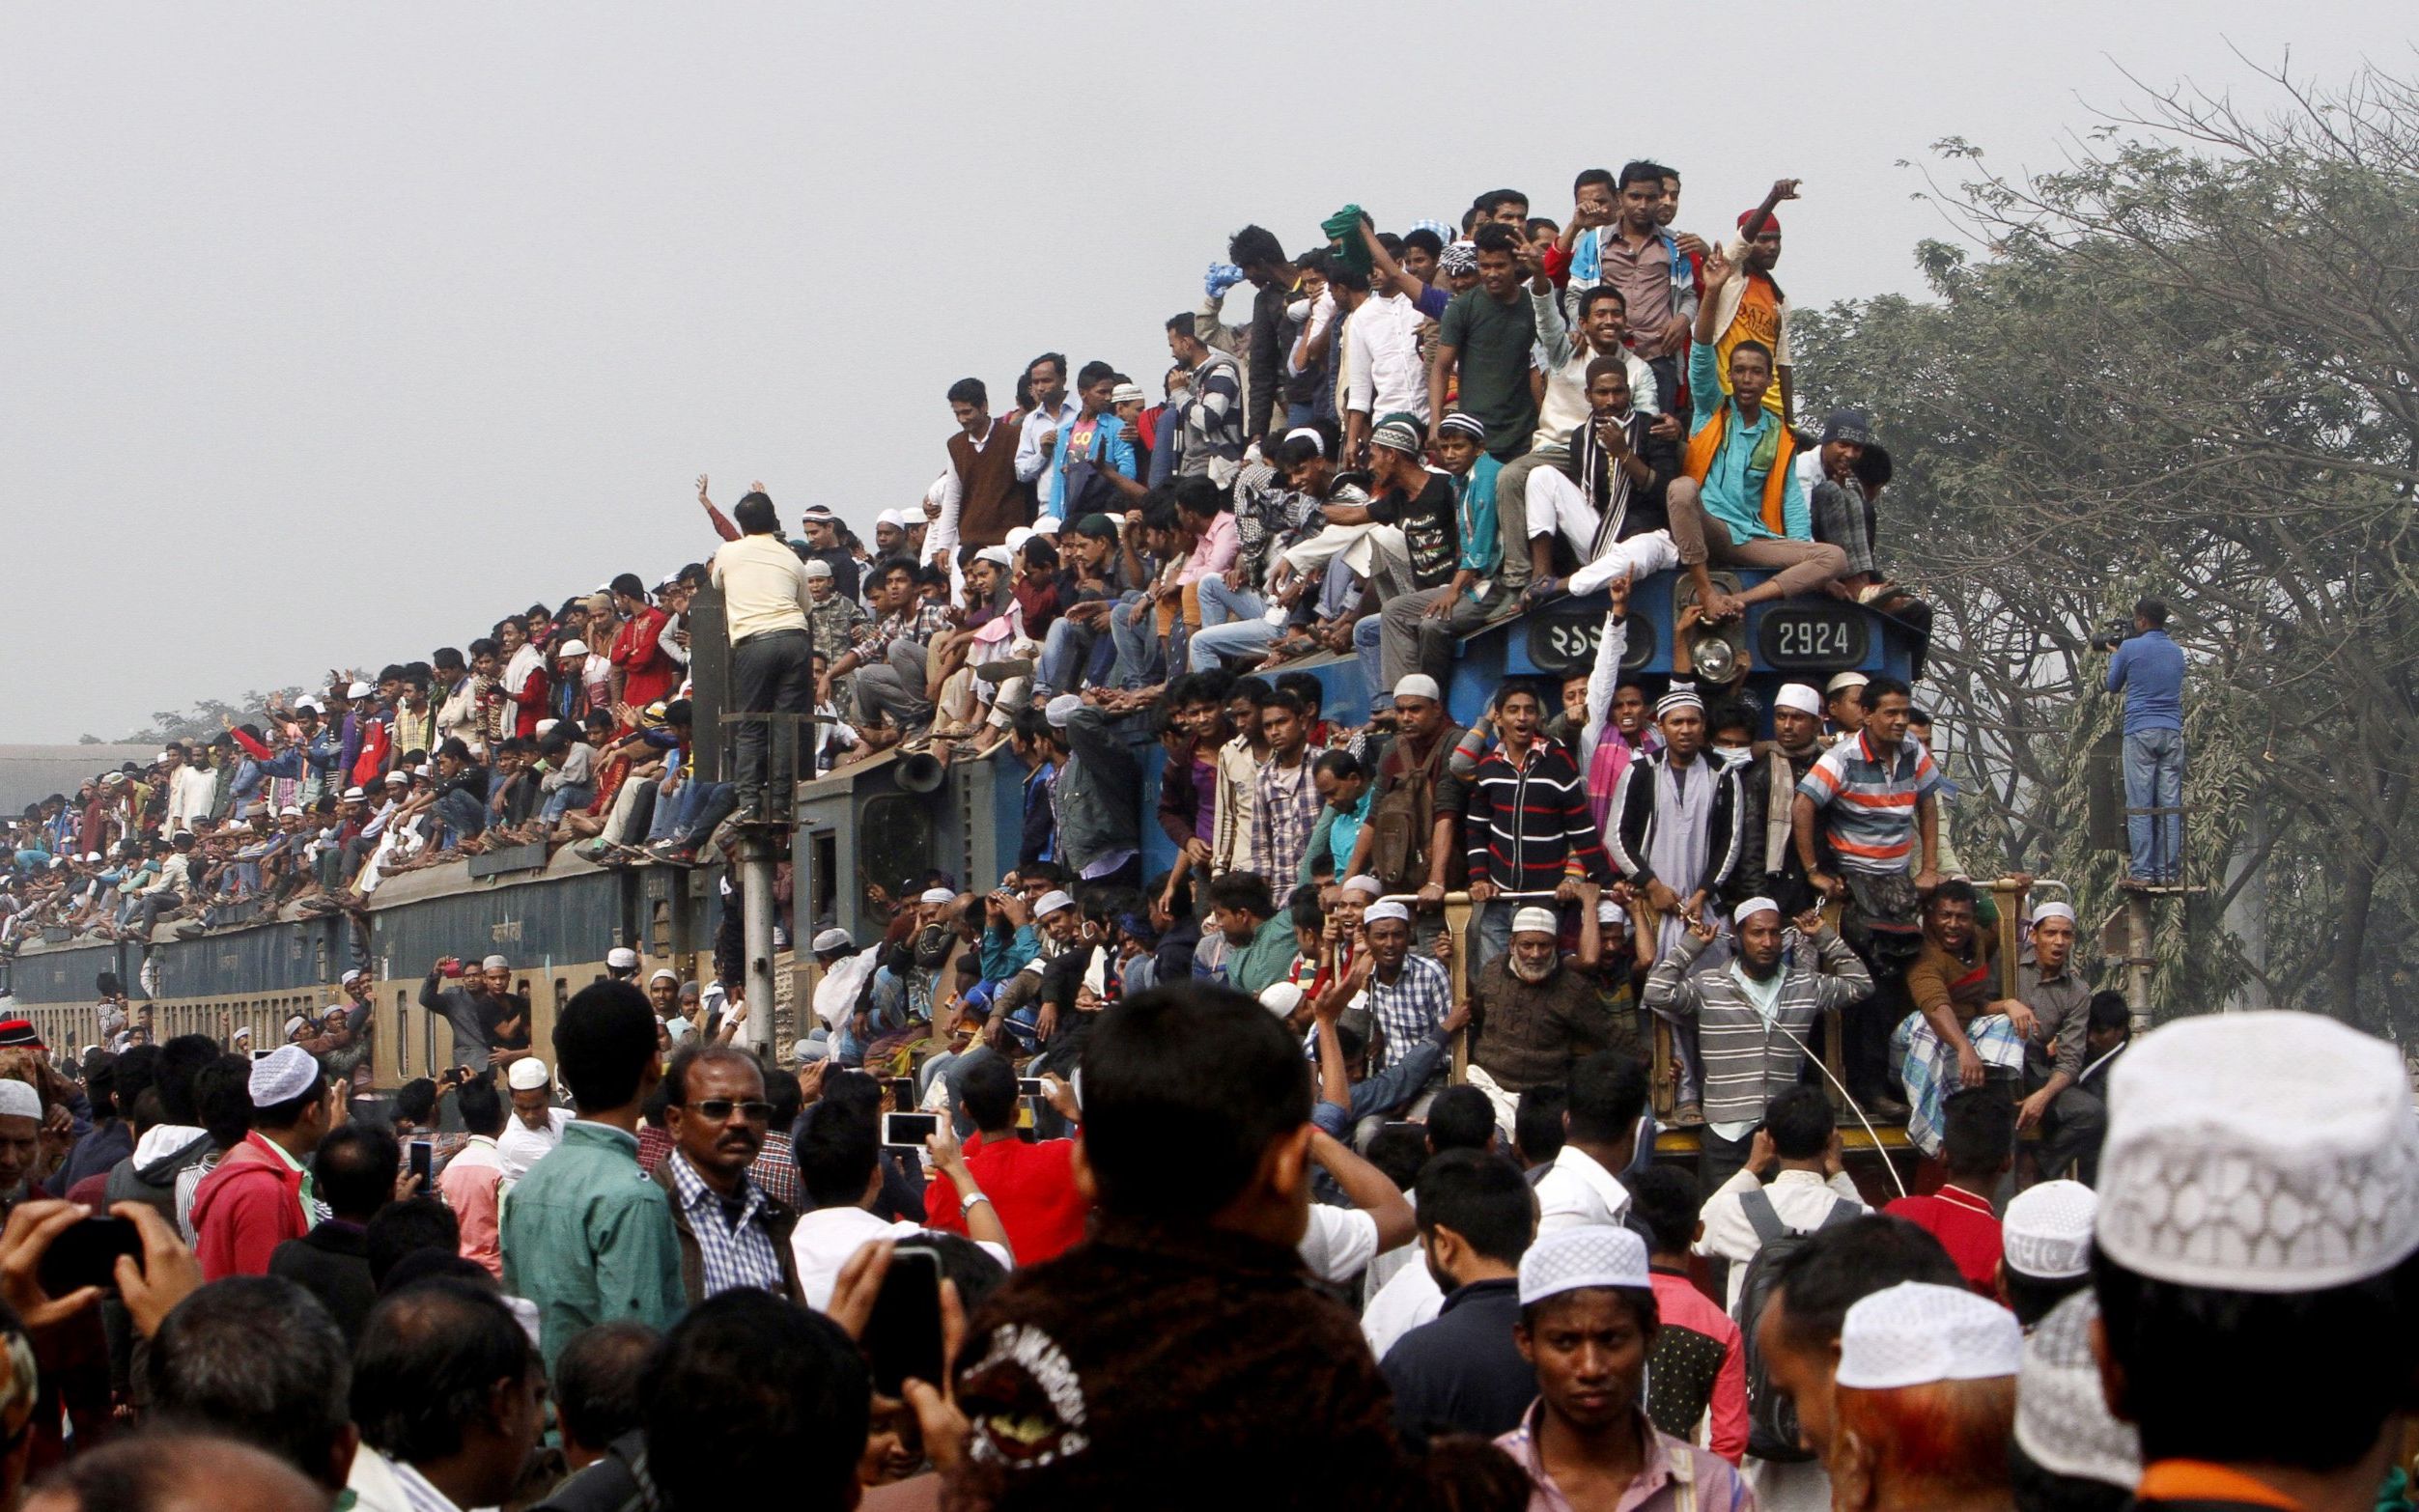 坐火车的奇观!走进人山人海的孟加拉国【寰球大百科155】